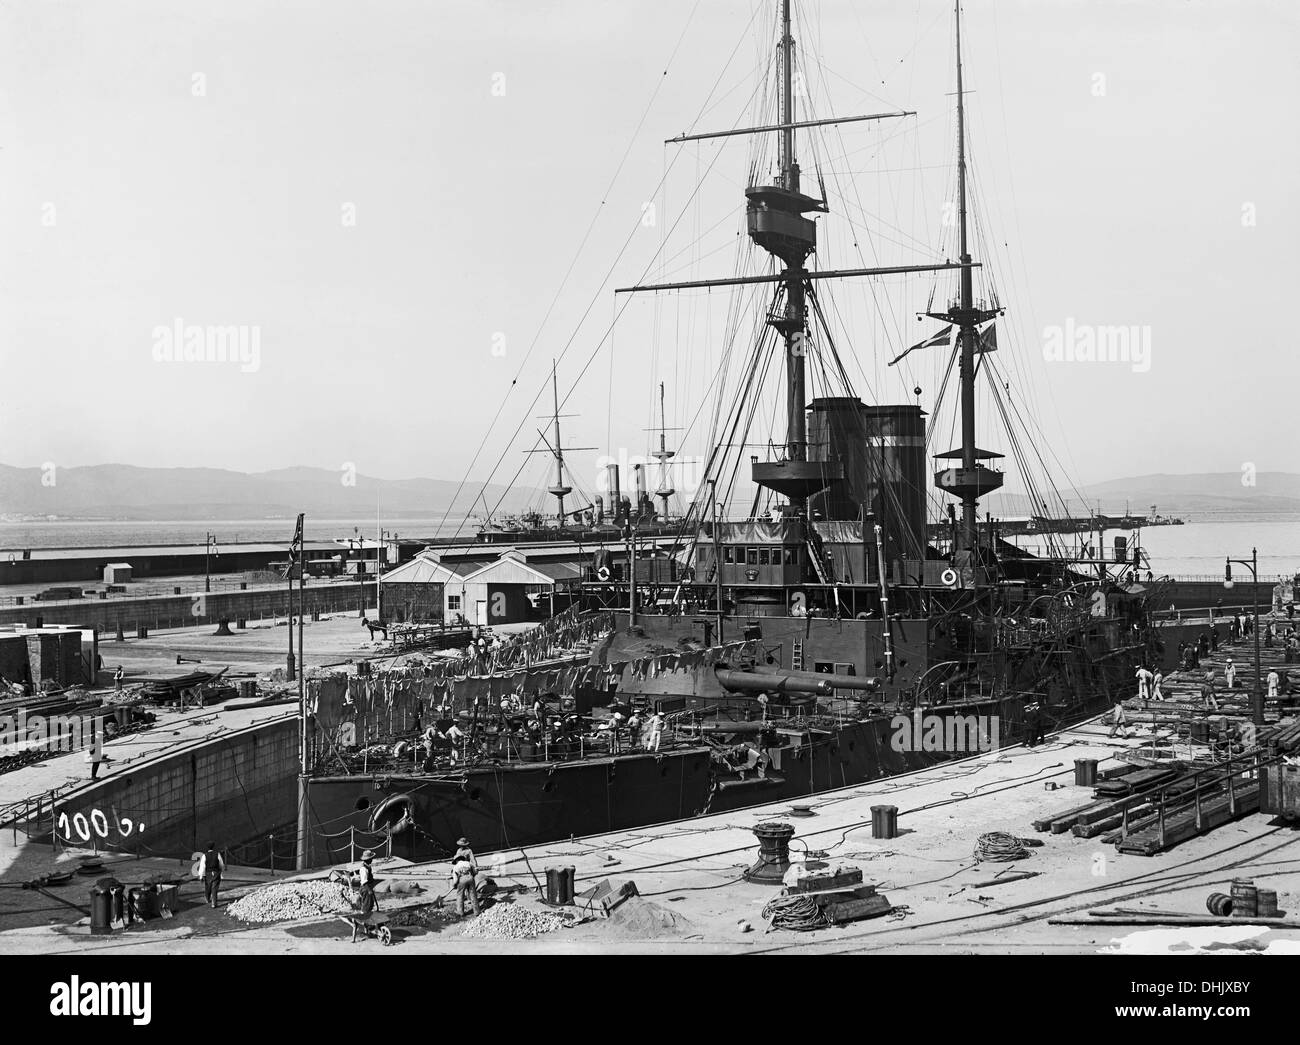 Blick auf ein Kriegsschiff in den Hafen von Gibraltar zwischen 1911 und 1913. Das Bild wurde von dem deutschen Fotografen Oswald Lübeck, einer der frühesten Vertreter der Reisefotografie und Schiff Fotografie an Bord Fahrgastschiffe aufgenommen. Foto: Deutsche Fotothek/Oswald Lübeck Stockfoto